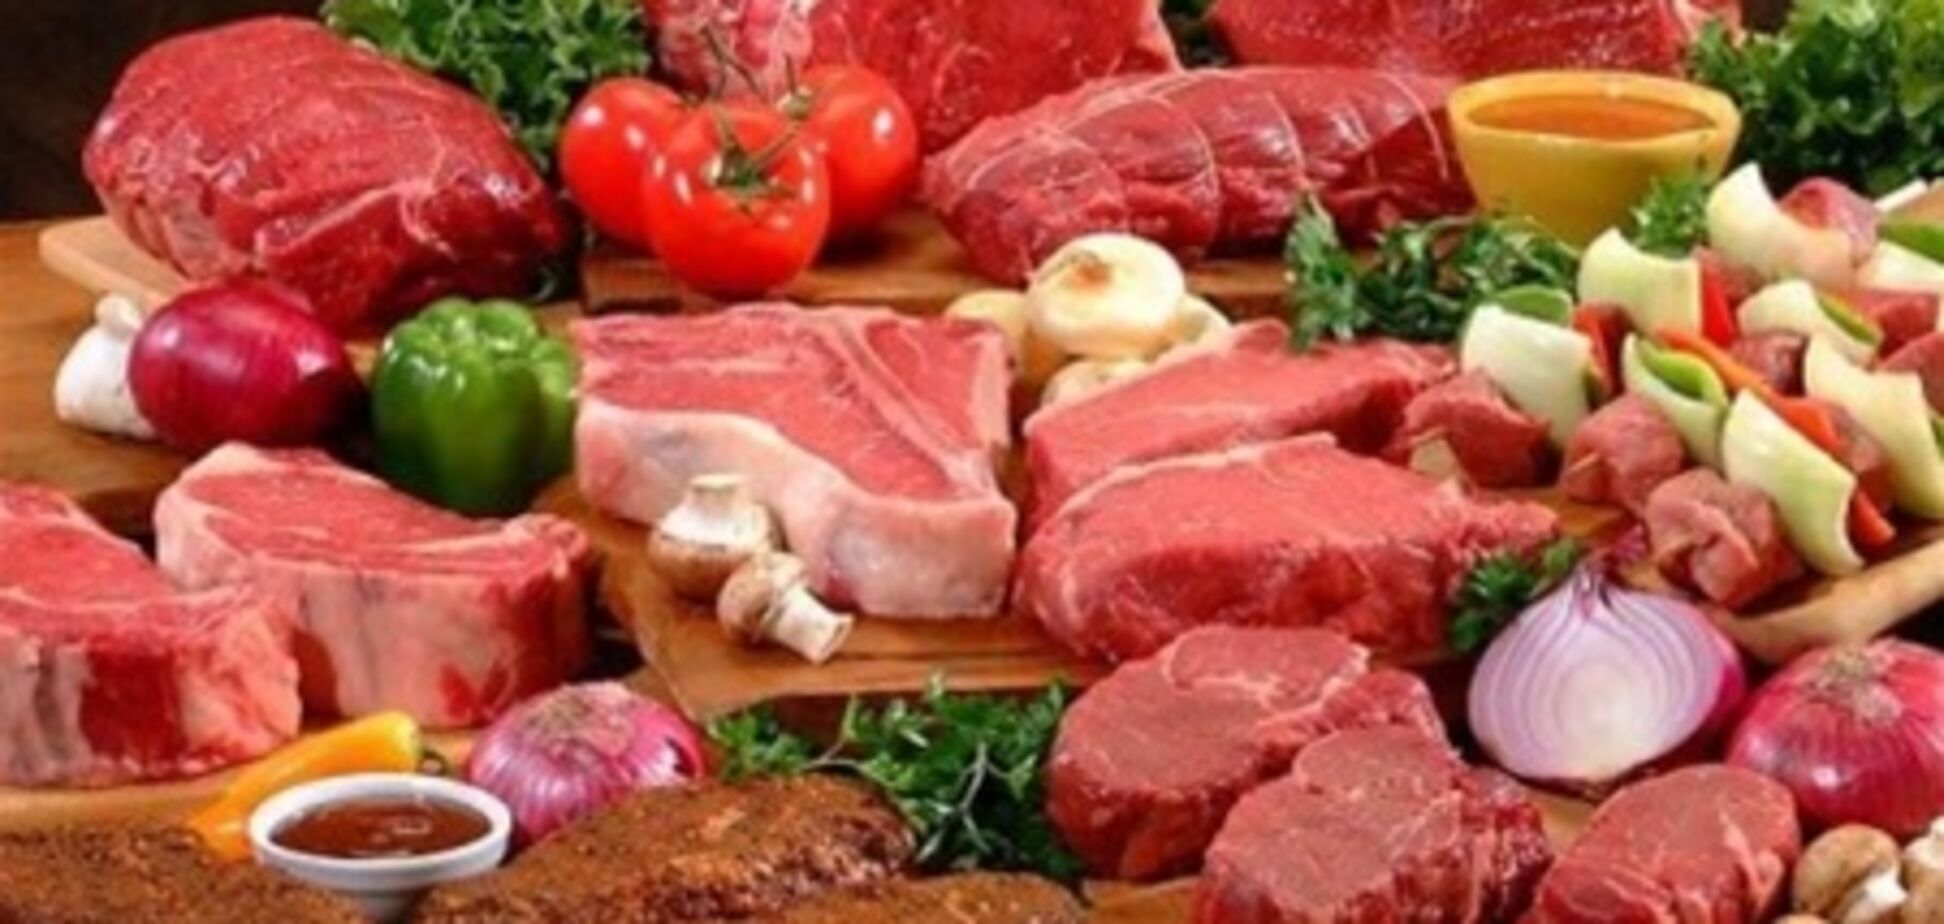 Польза и вред от употребления мяса